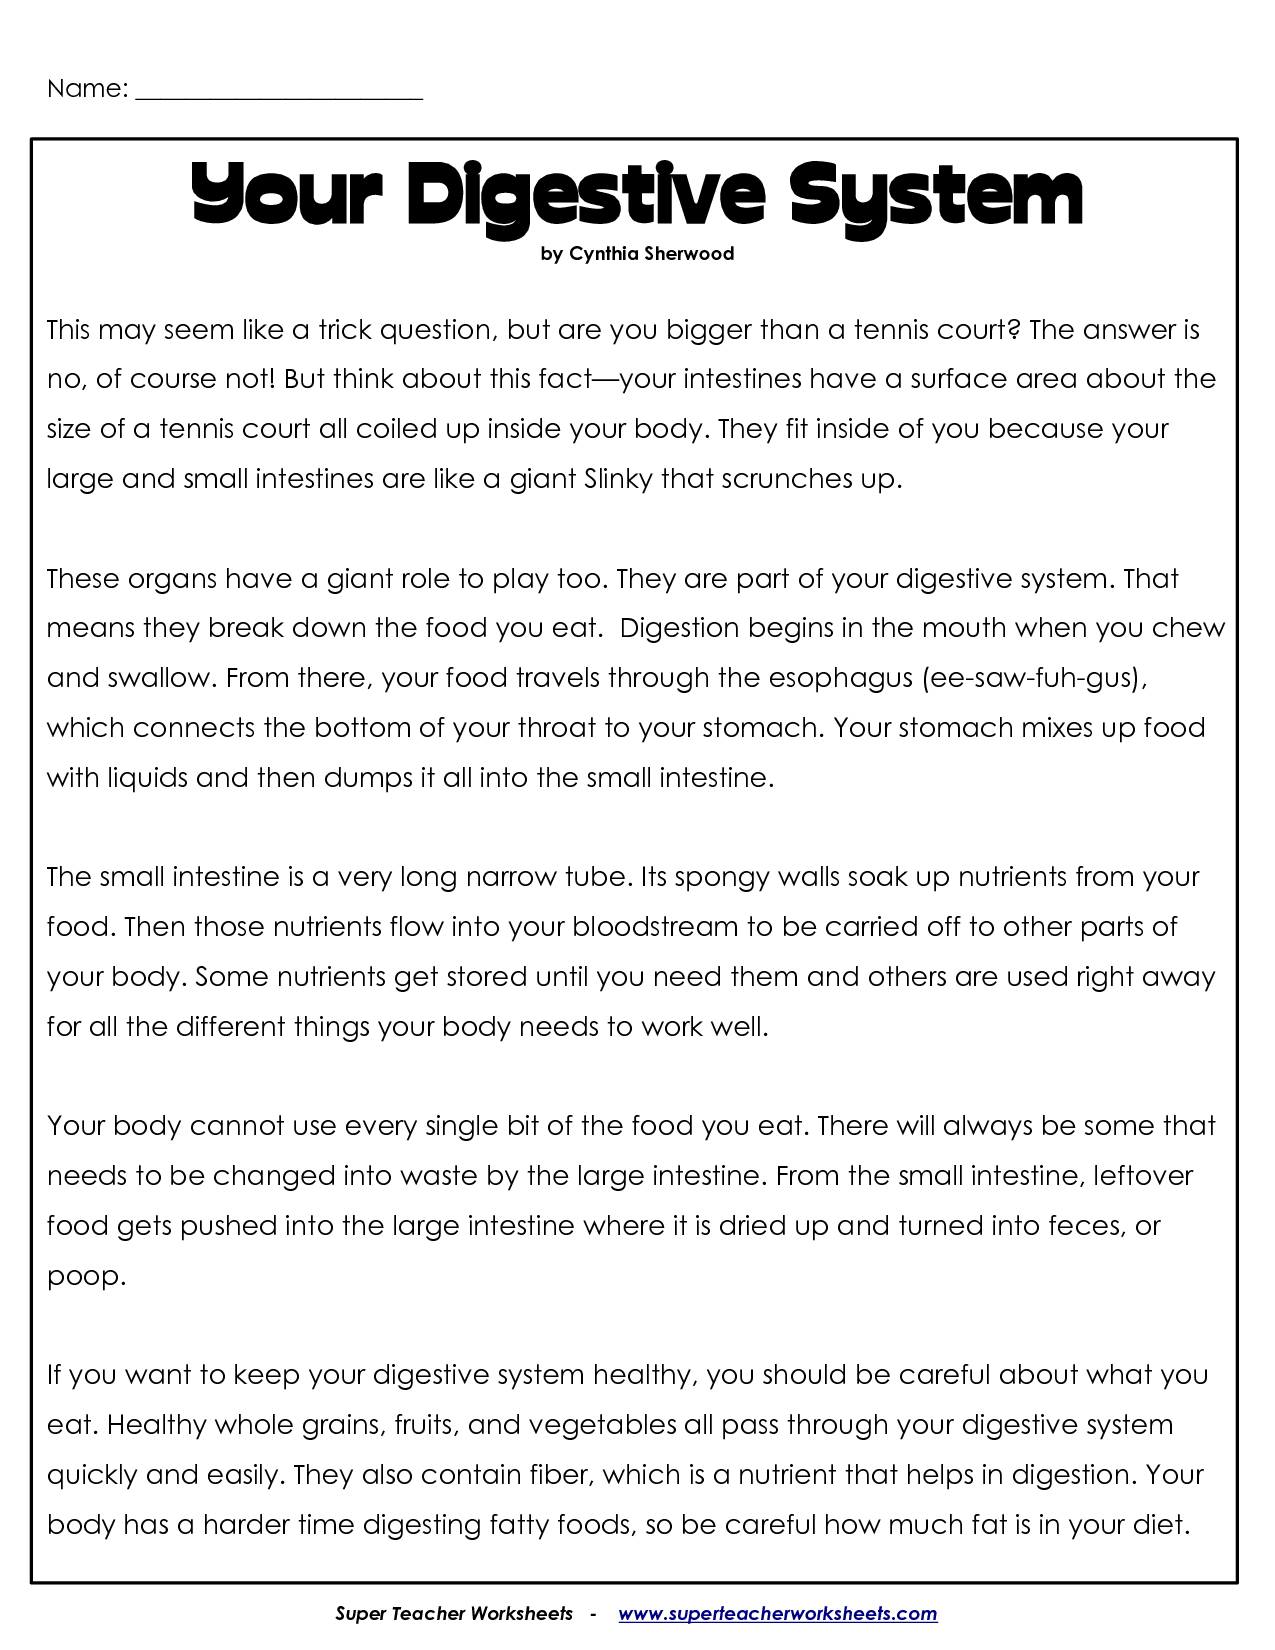 Digestive System Worksheet Image